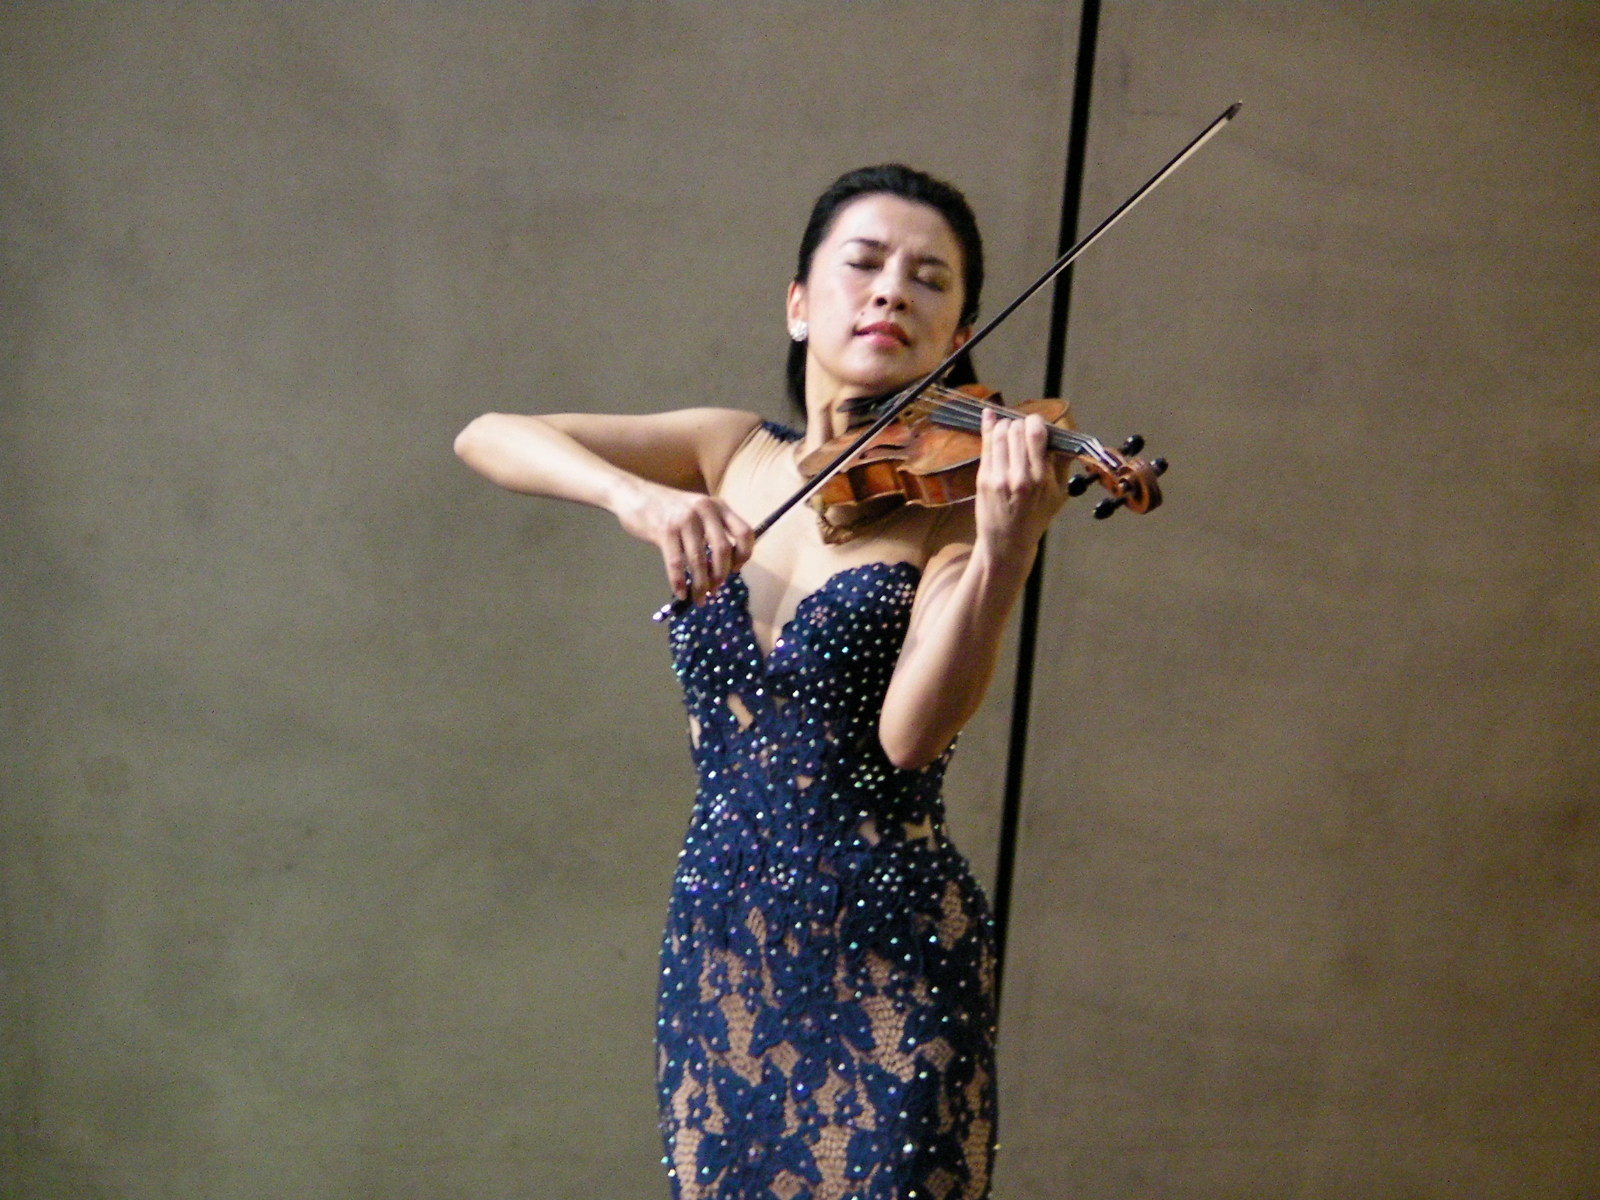 内覧会の同日に行われた開会式で、テーマ曲を演奏するヴァイオリニストの川井郁子。